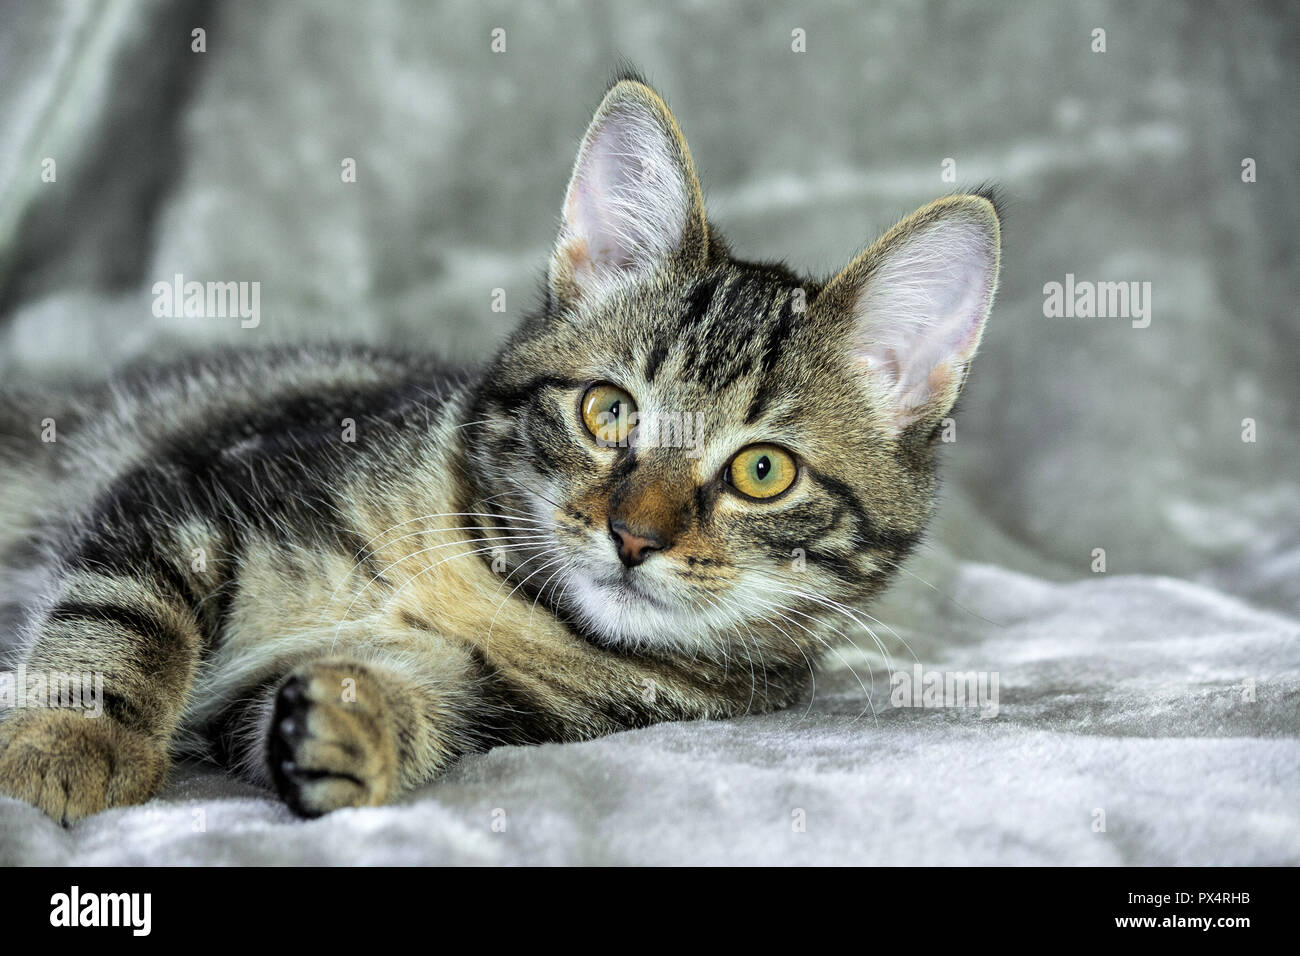 Piccolo mongrel striped kitten giacente sul suo lato, zampe anteriori stese, muso nella fotocamera, guardando dritto, giallo con occhi verdi, arancione Foto Stock